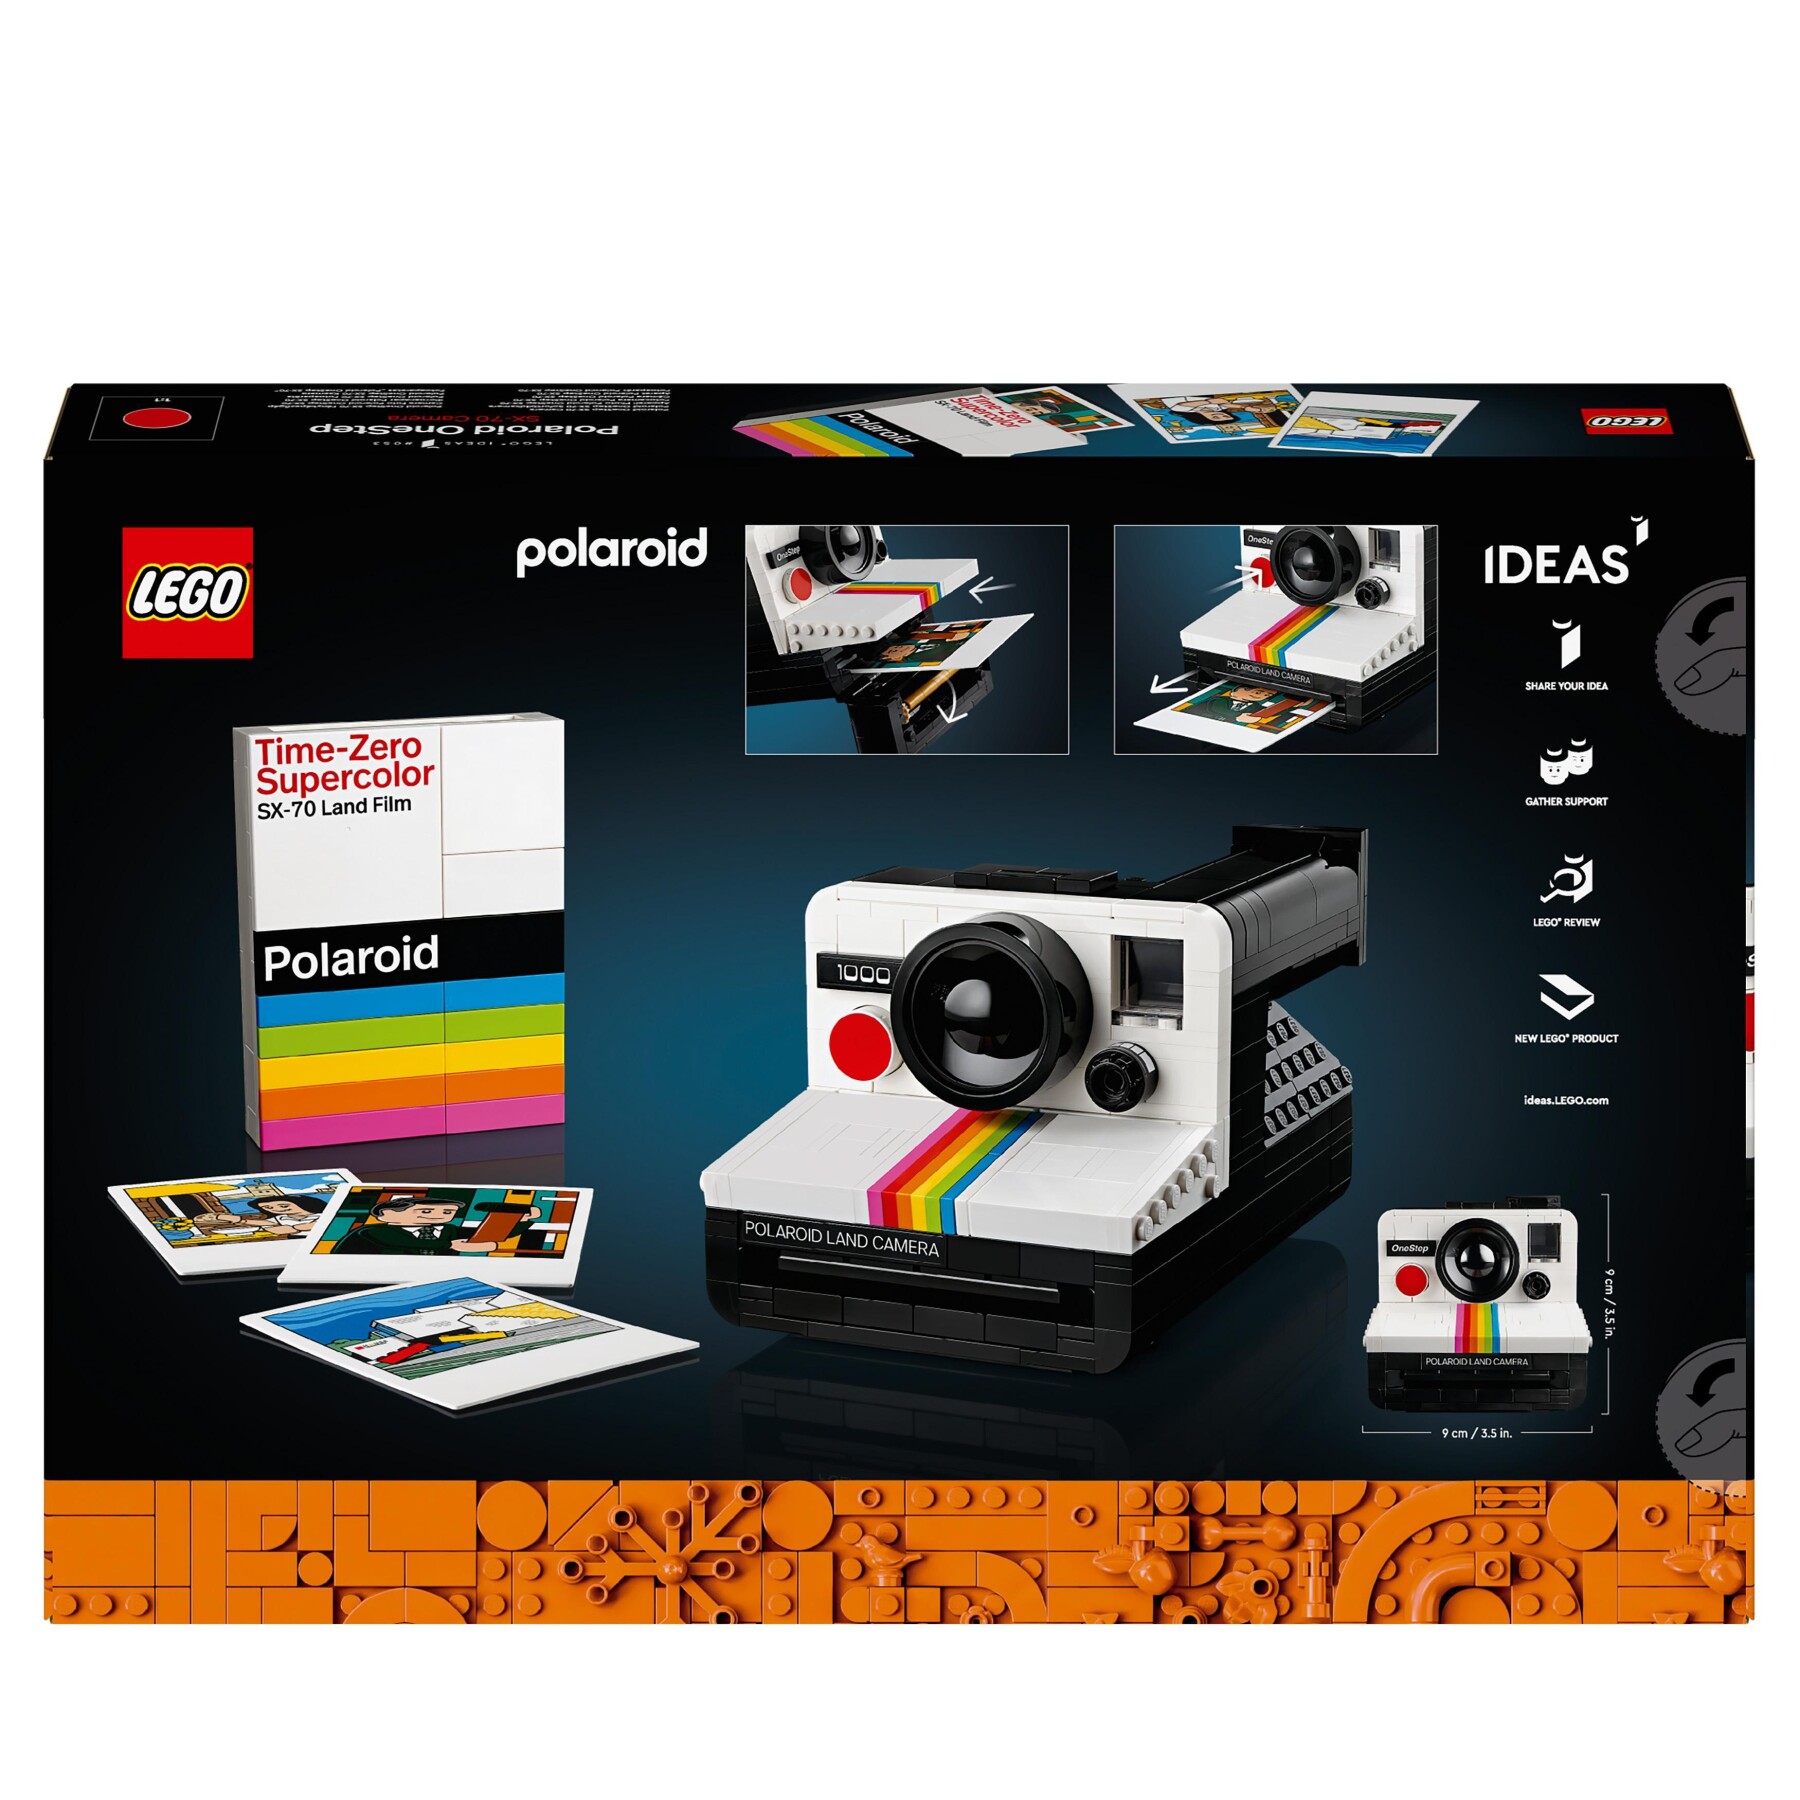 Lego ideas fotocamera polaroid onestep sx-70 21345 modellismo da costruire per adulti, regali creativi, oggetti da collezione - LEGO IDEAS